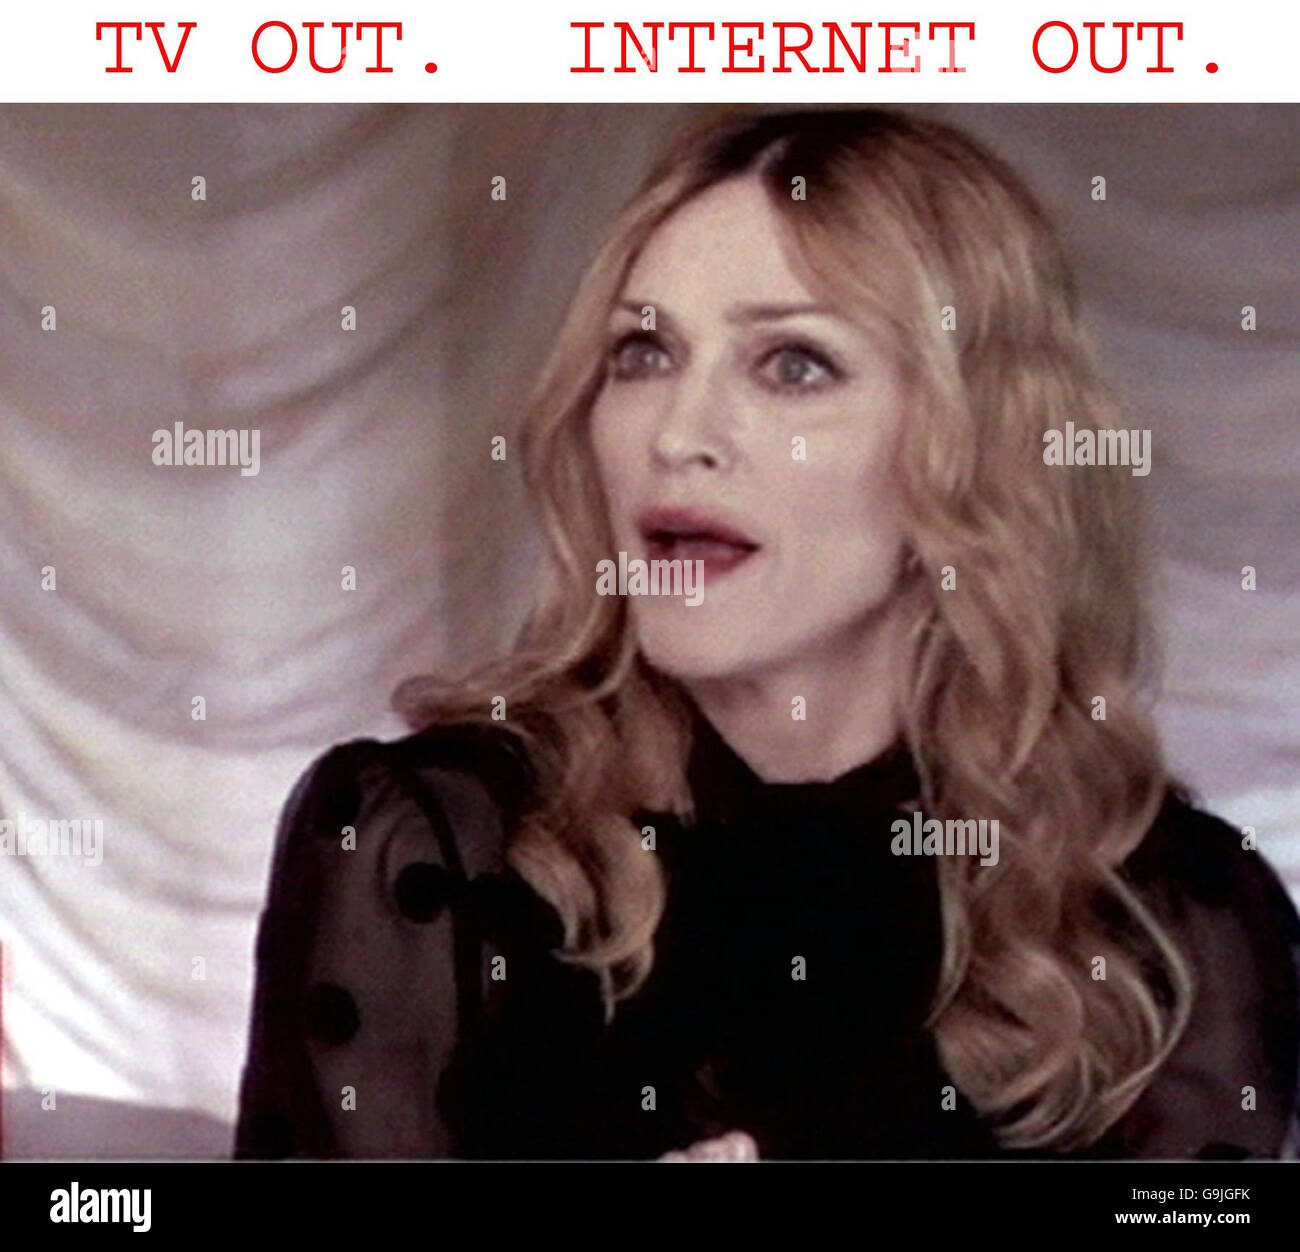 Videograb della pop star statunitense Madonna durante un'intervista sul programma televisivo della BBC Newsnight. Foto Stock